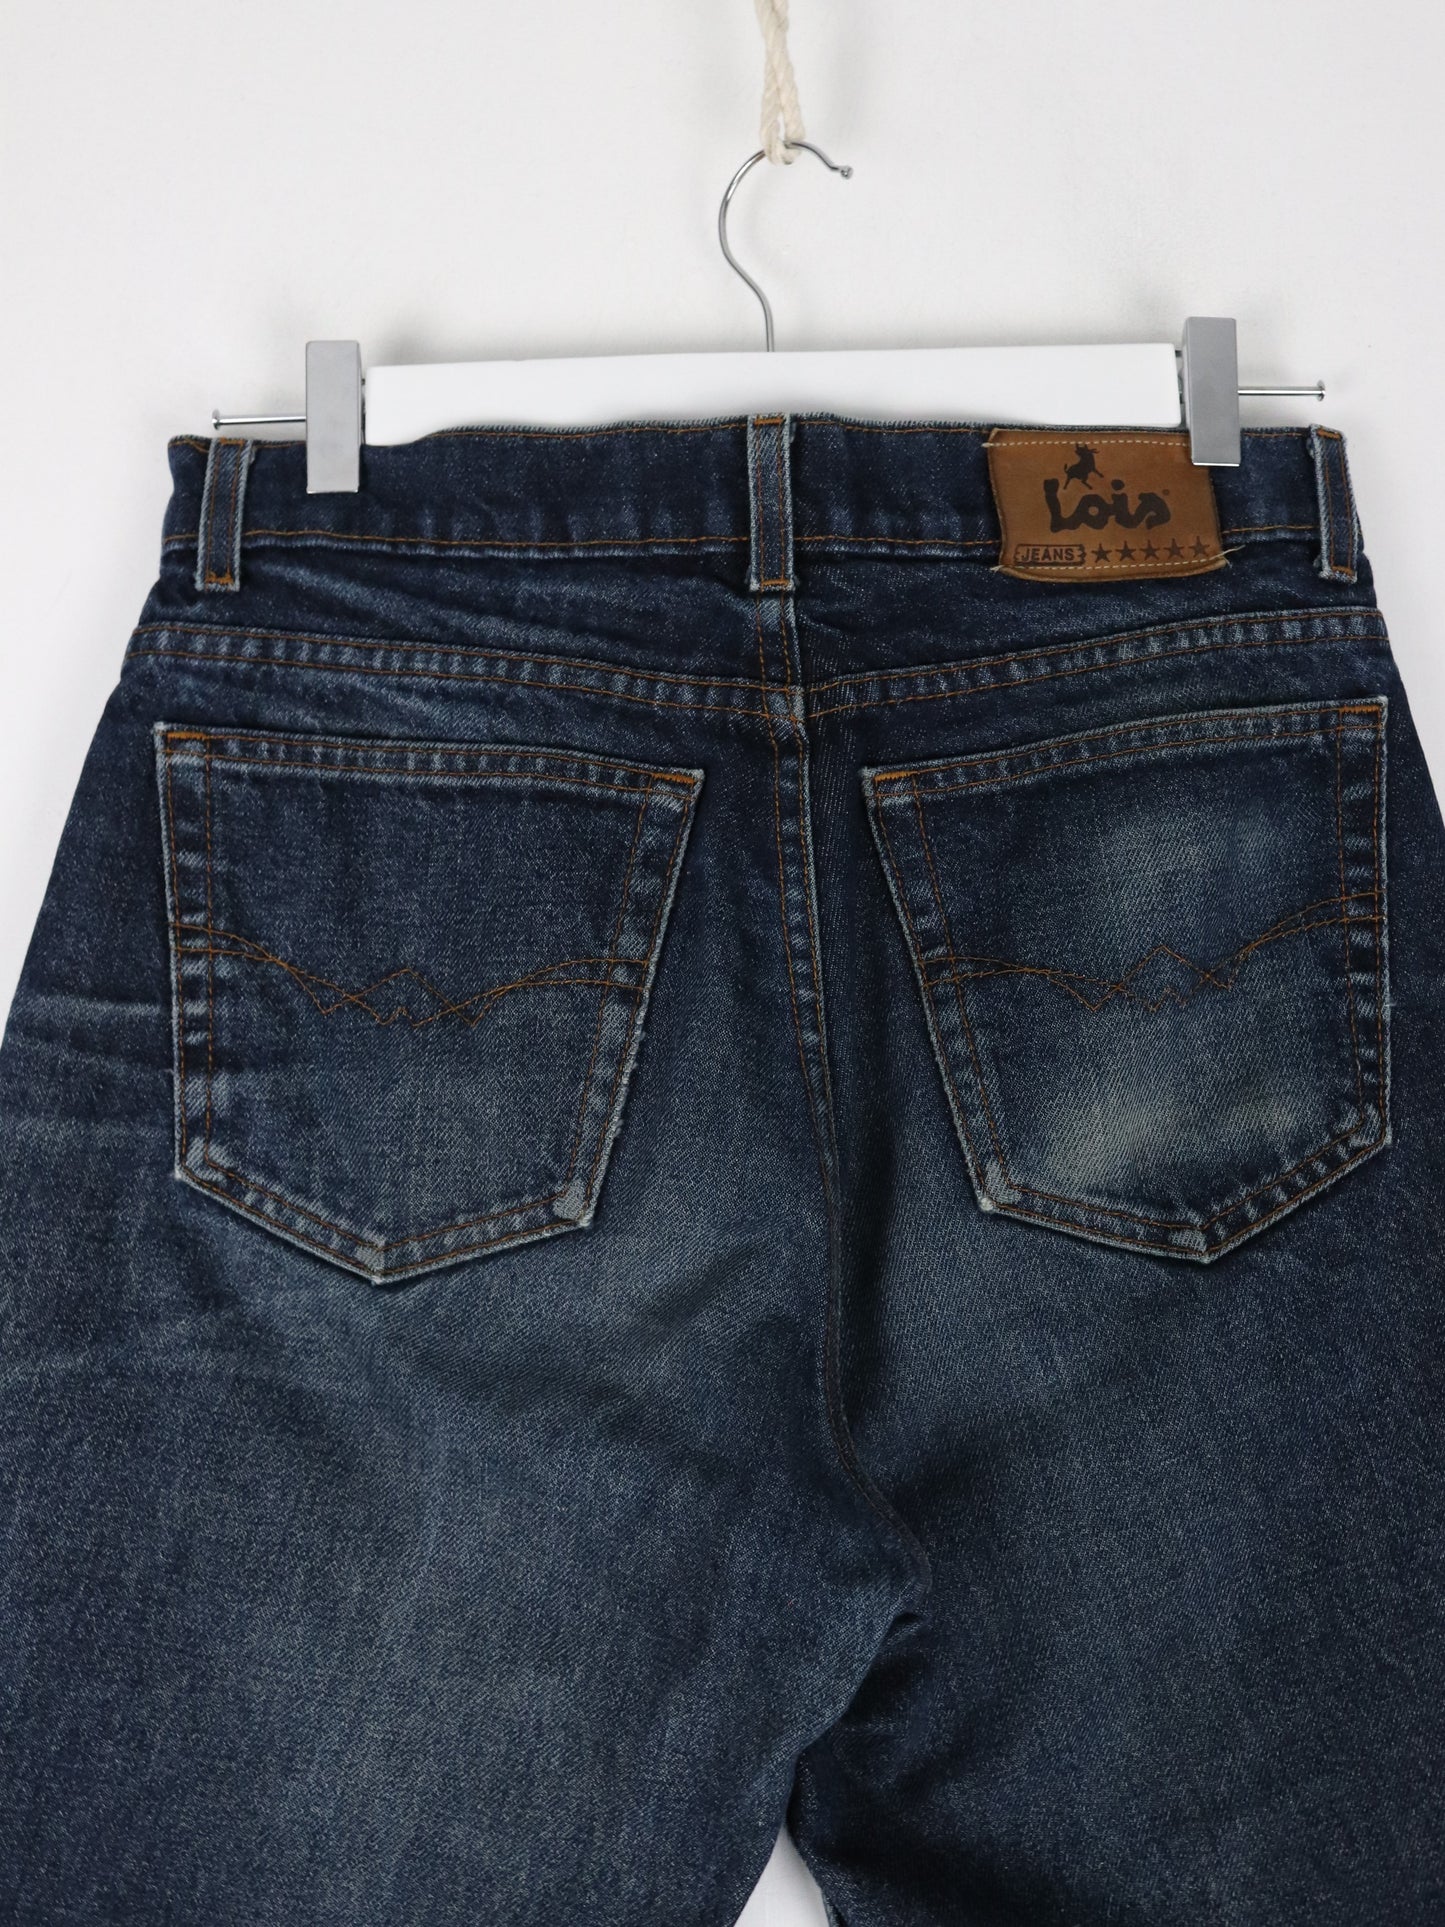 Lois Pants Mens 29 x 30 Blue Denim Jeans